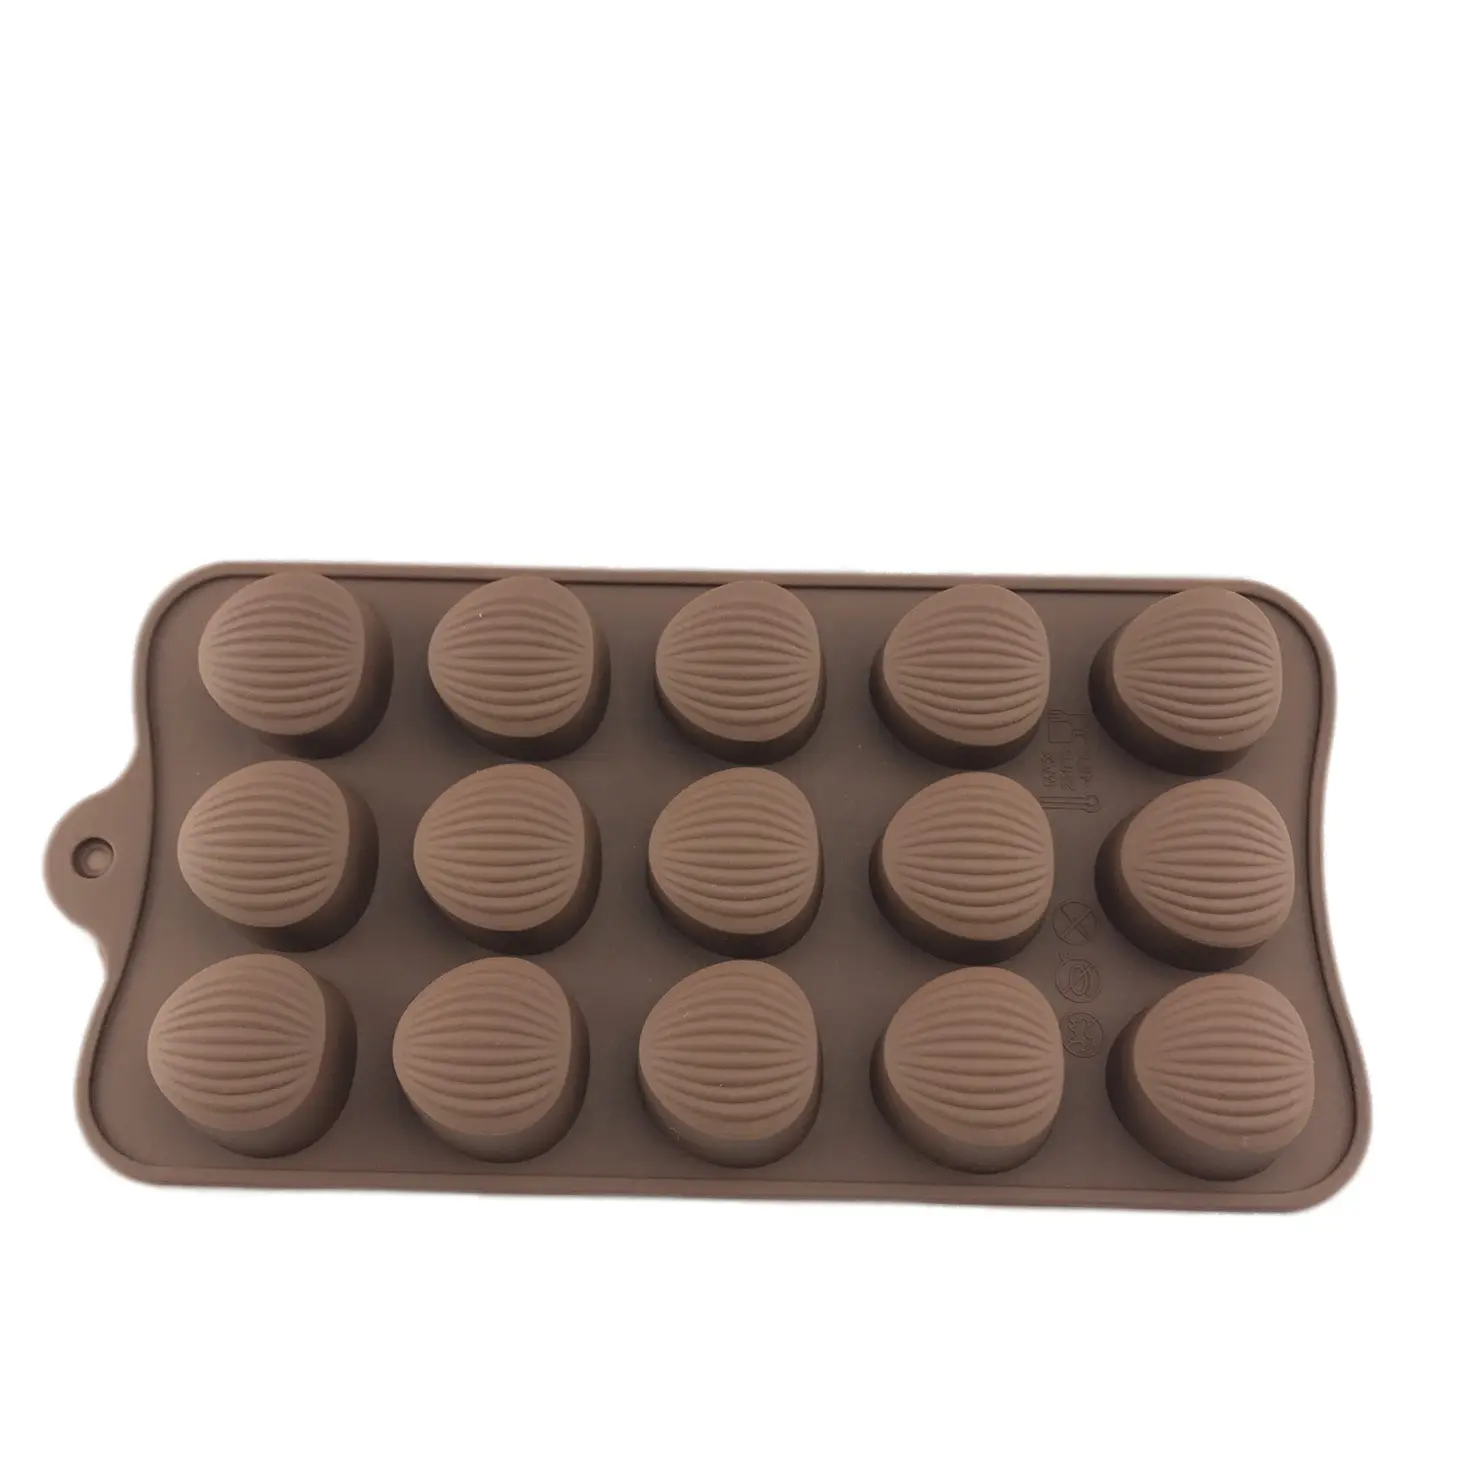 377 आकार के चॉकलेट कैंडी मोल्ड्स फोंडेंट मेकिंग पैन खाद्य-ग्रेड शैल सिलिकॉन मोल्ड की आपूर्ति करता है